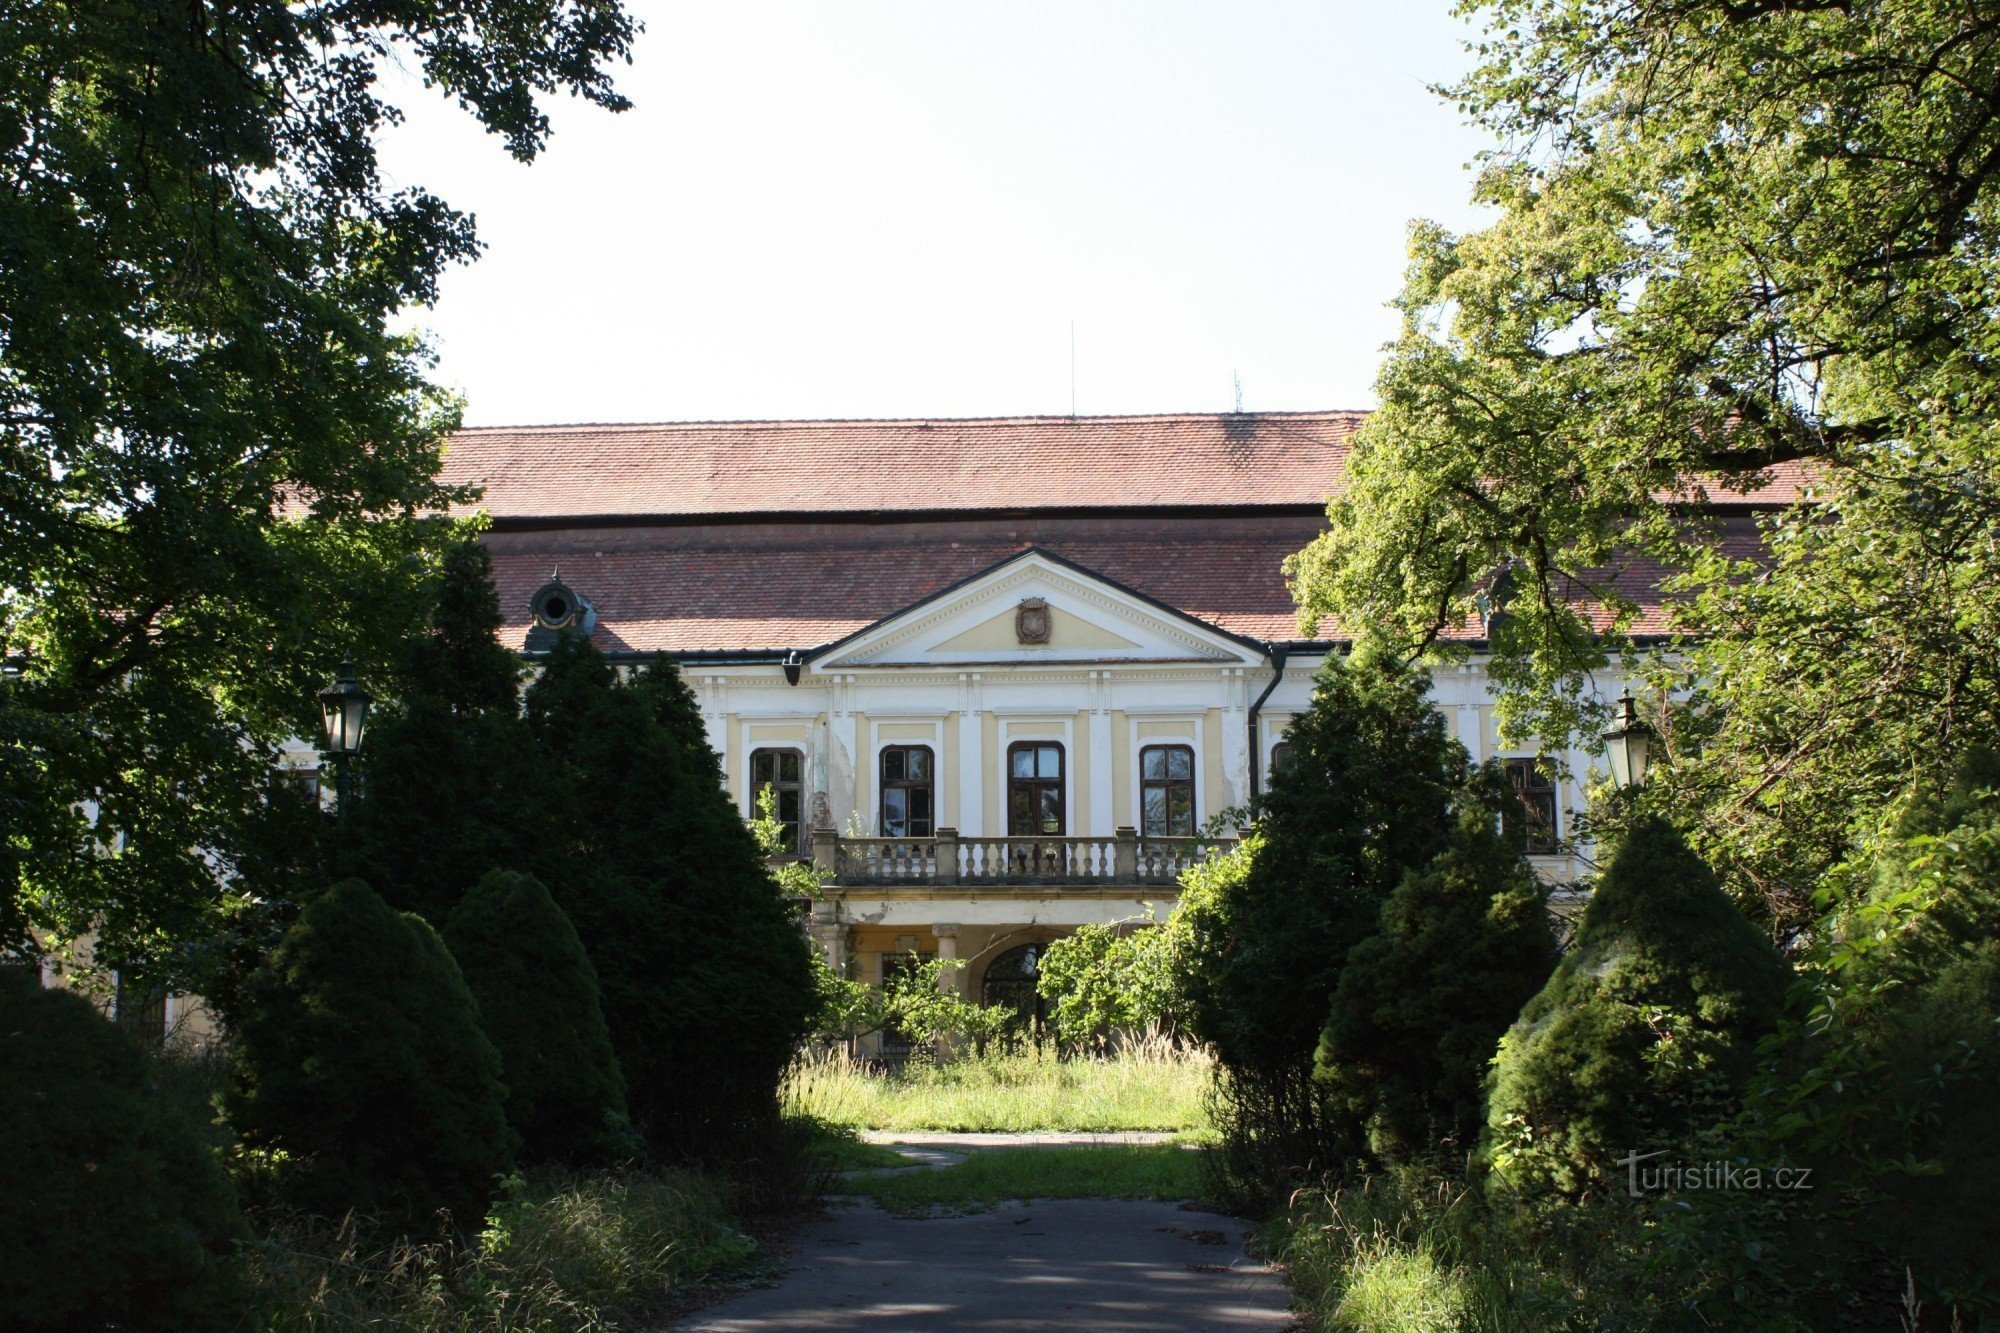 Edificio classico del castello di Zdislavice